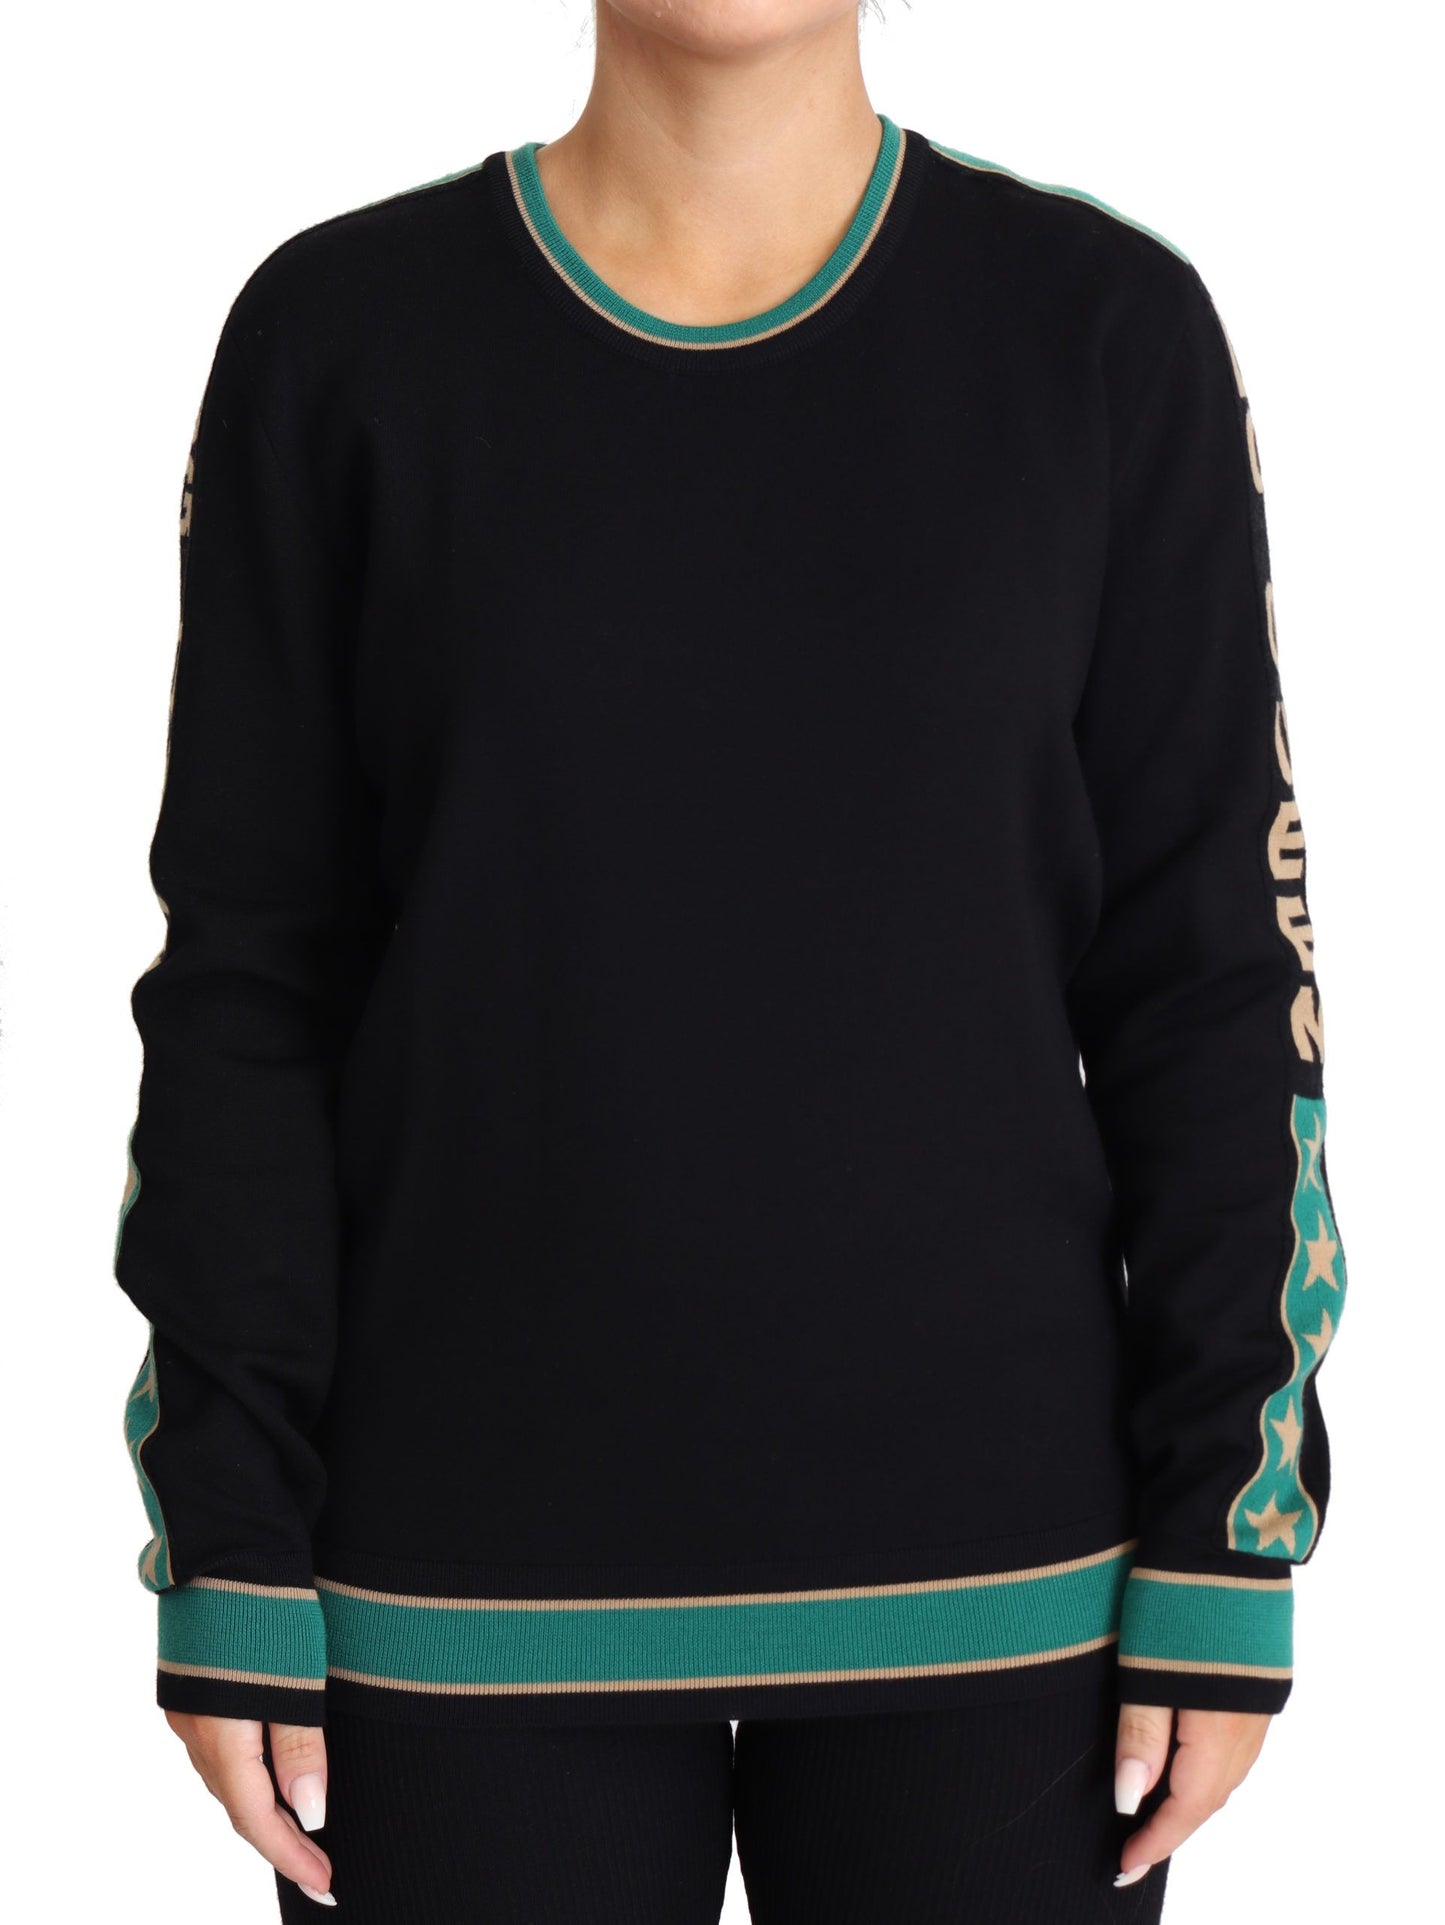 Queen Monogram Pullover Sweater in Luxe Wool Blend